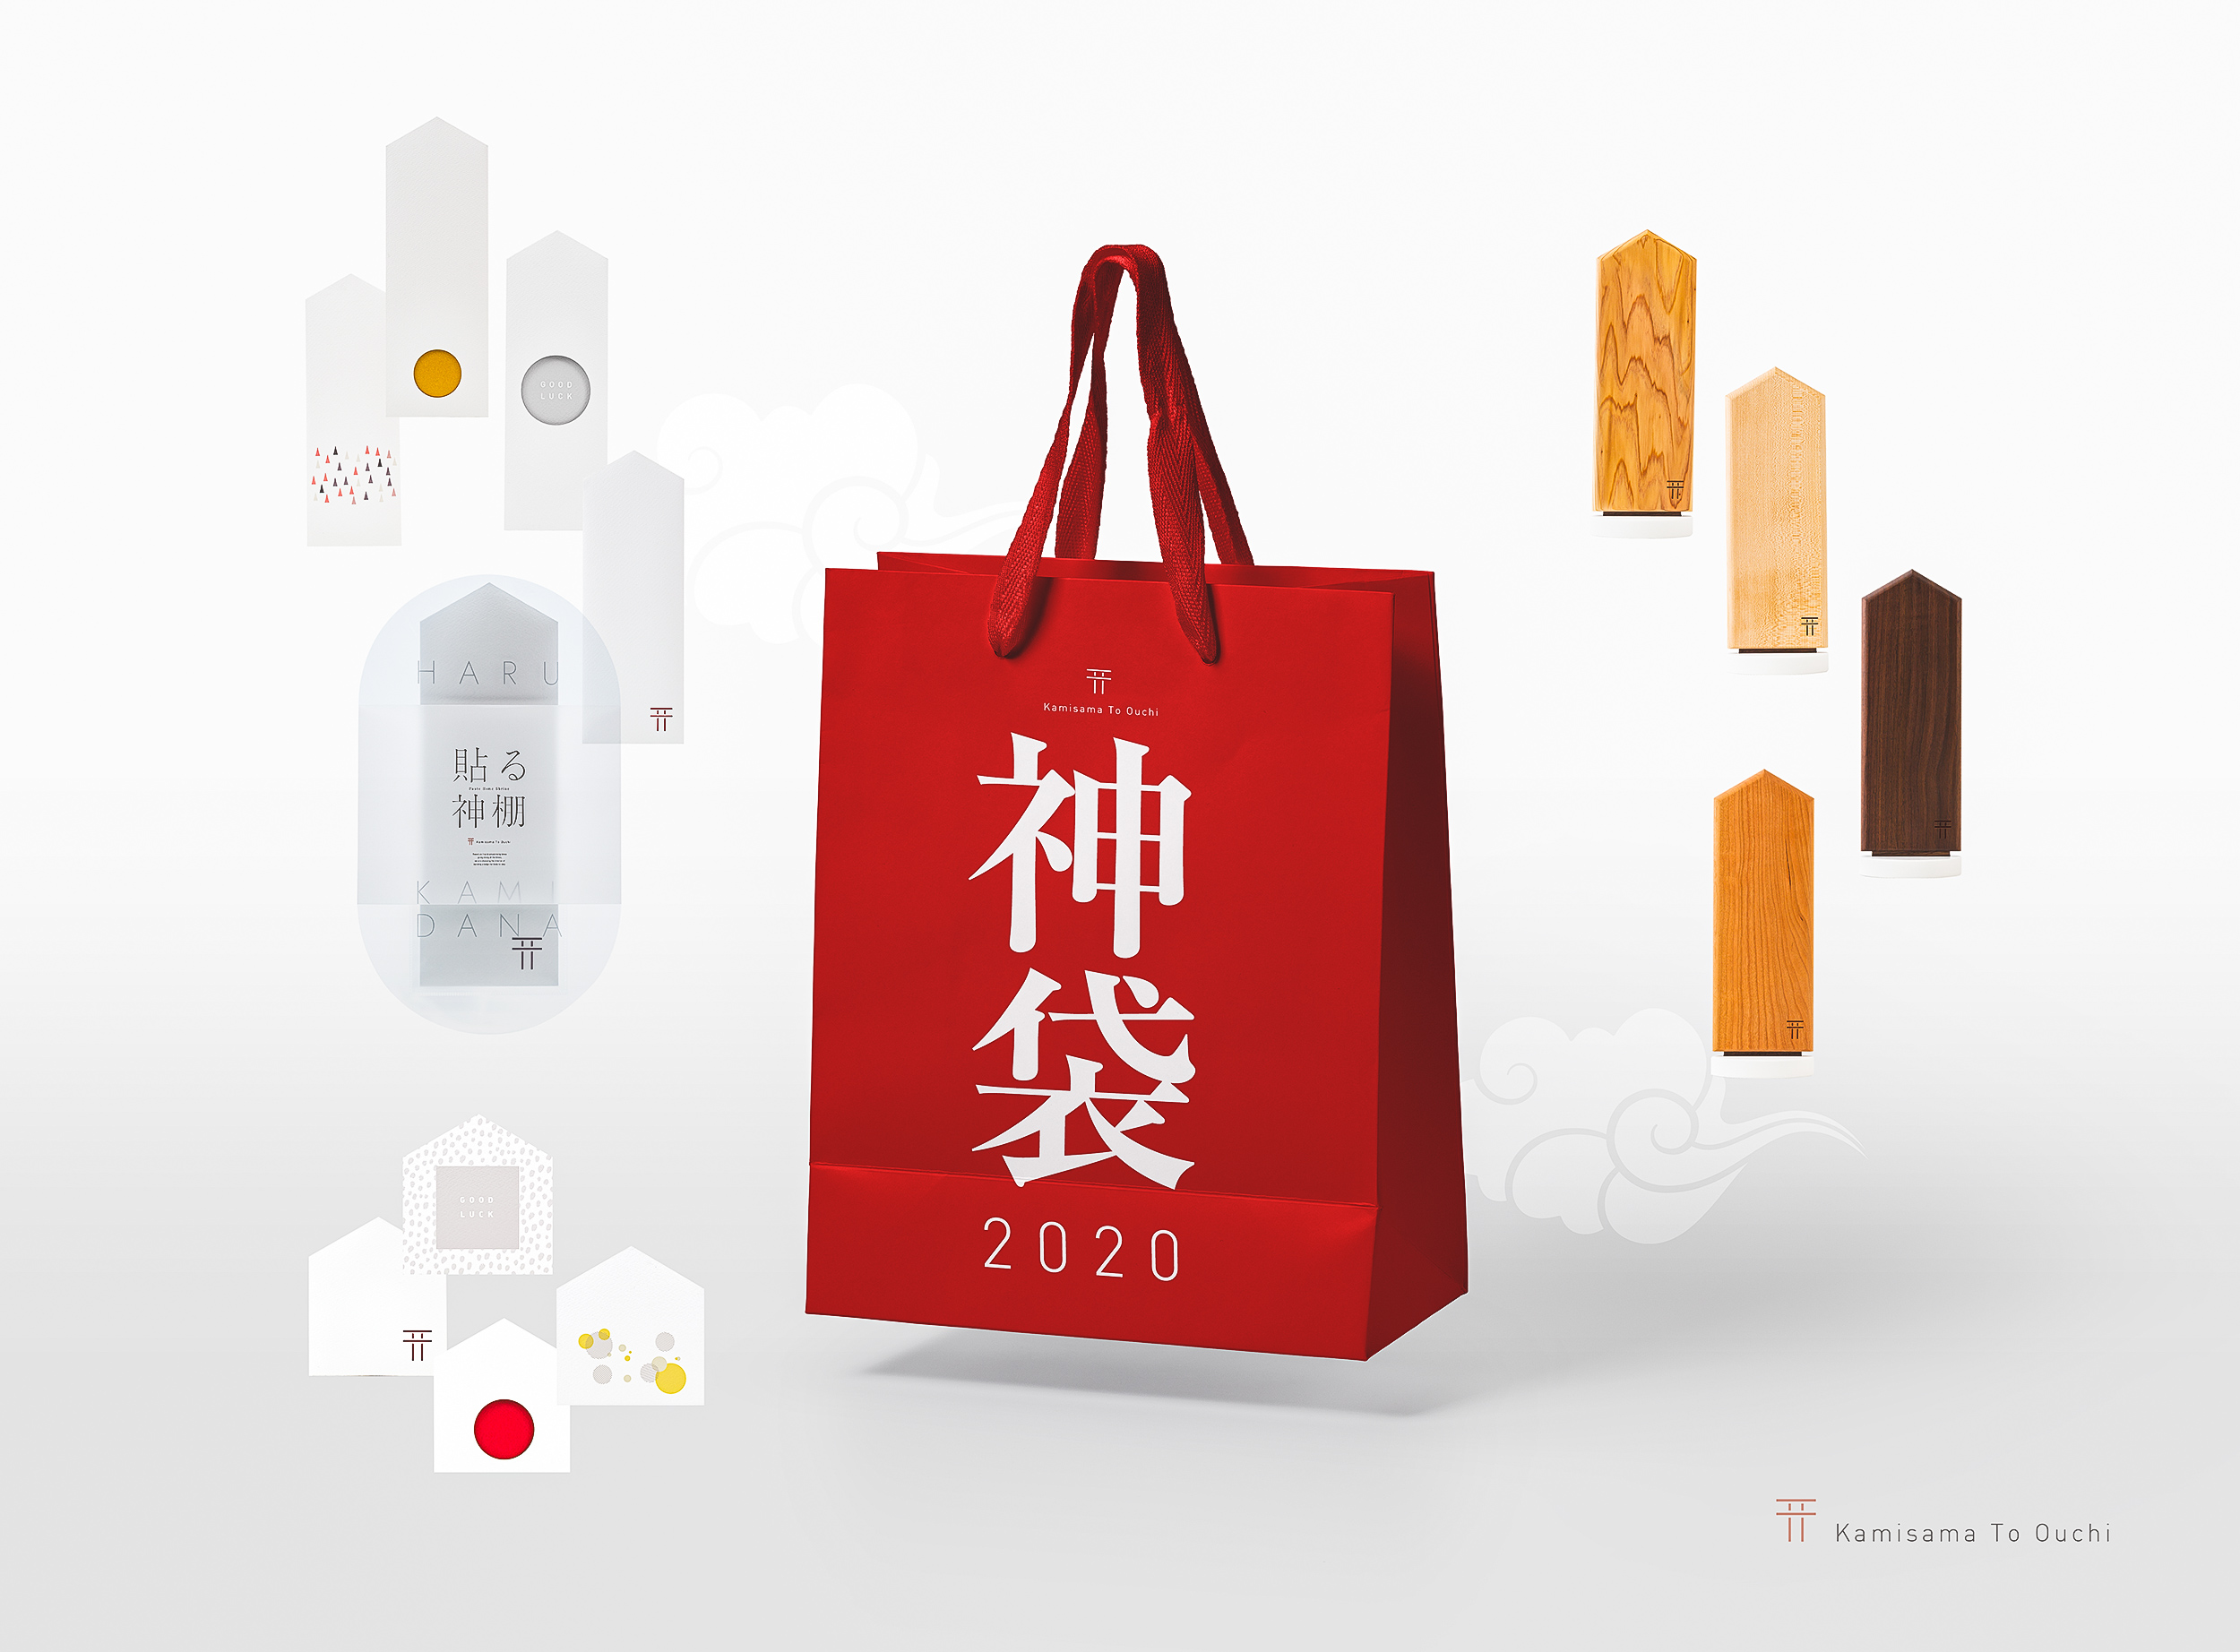 日本初 神棚の詰め合わせ 福袋ならぬ 神袋 が登場 株式会社nanaoto Companyのプレスリリース